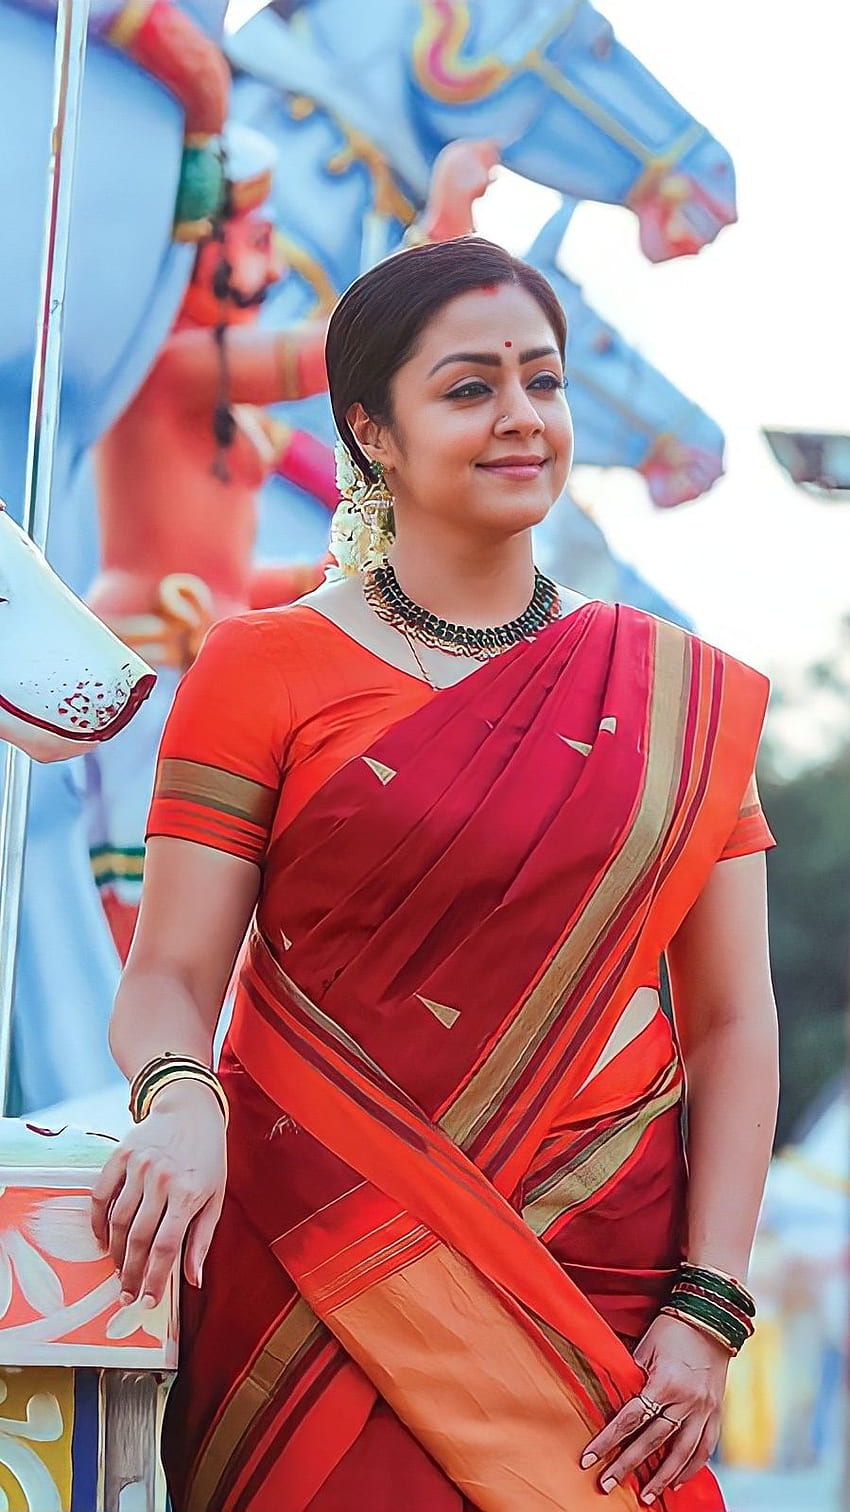 Tamil Actress Jothiha Nude Photos - Jothika, tamil actress, saree beauty HD phone wallpaper | Pxfuel